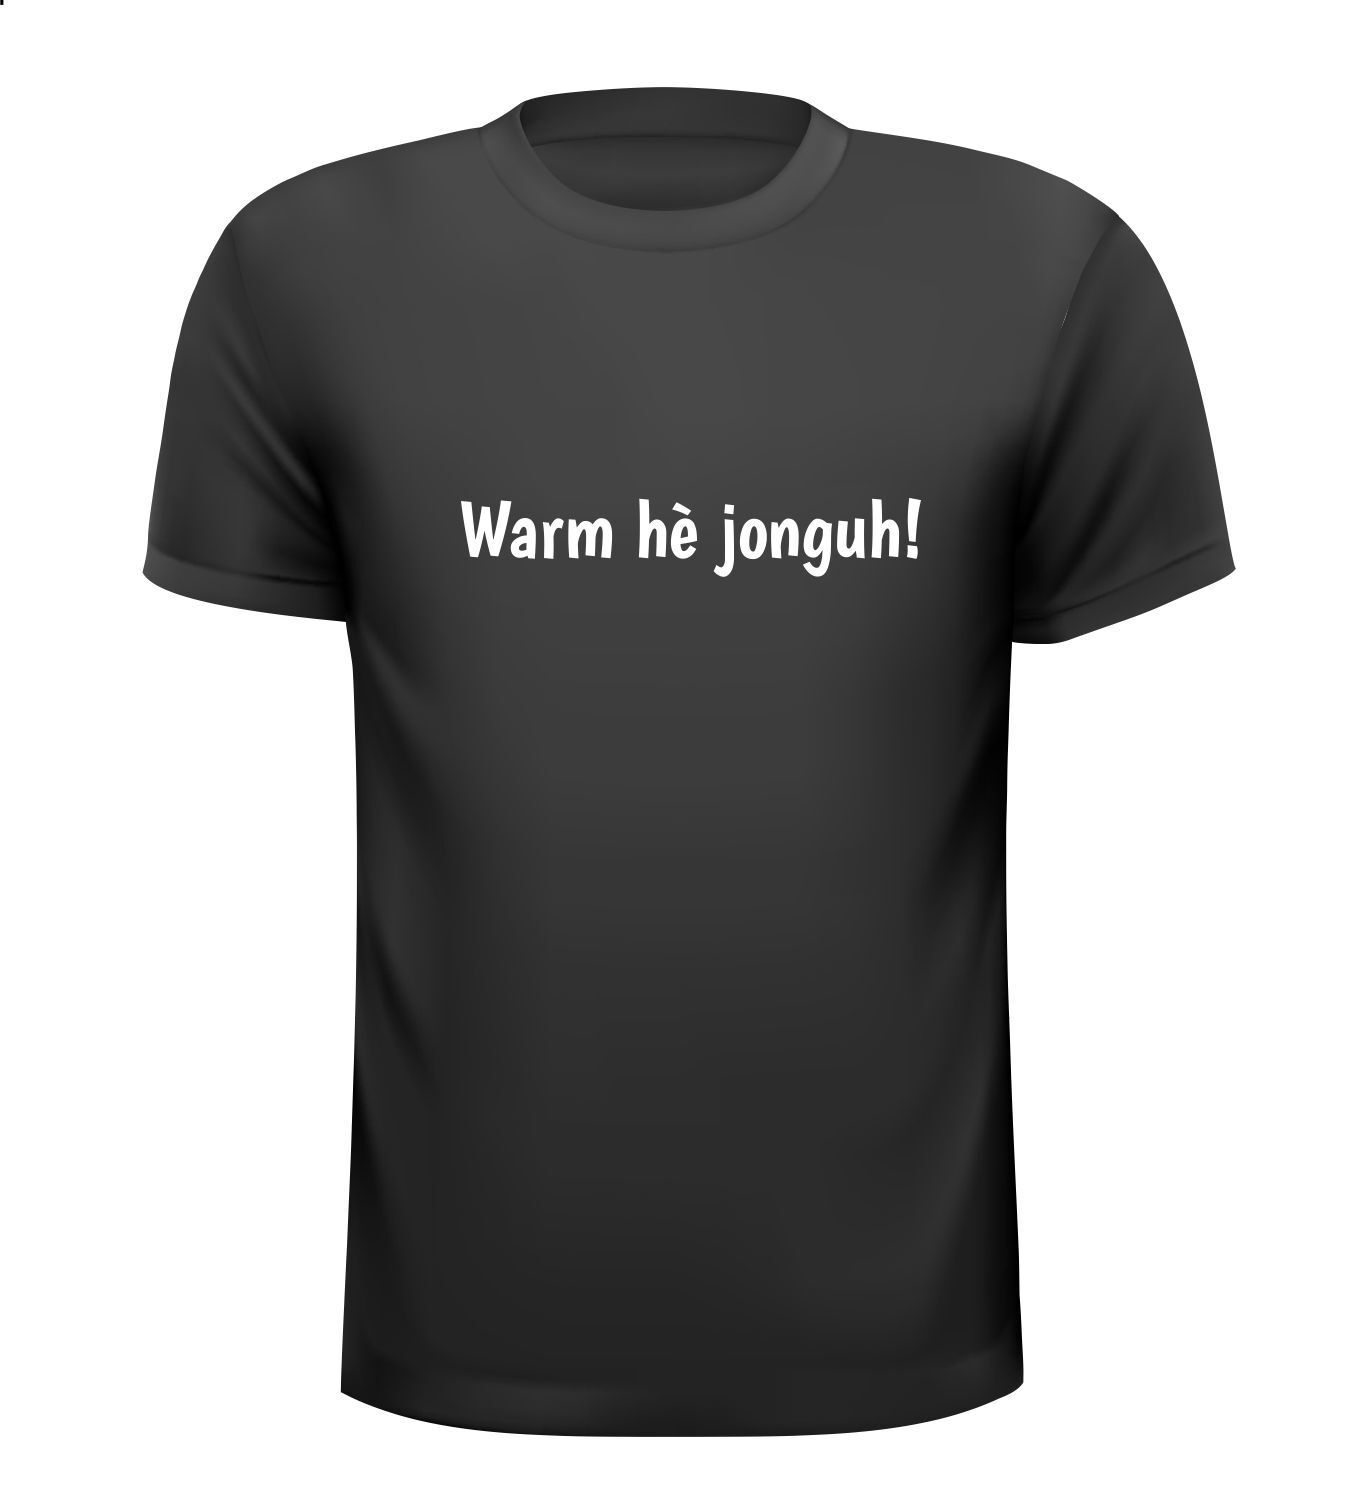 Warm hè jonguh! t-shirt zomer tropisch heet hittegolf